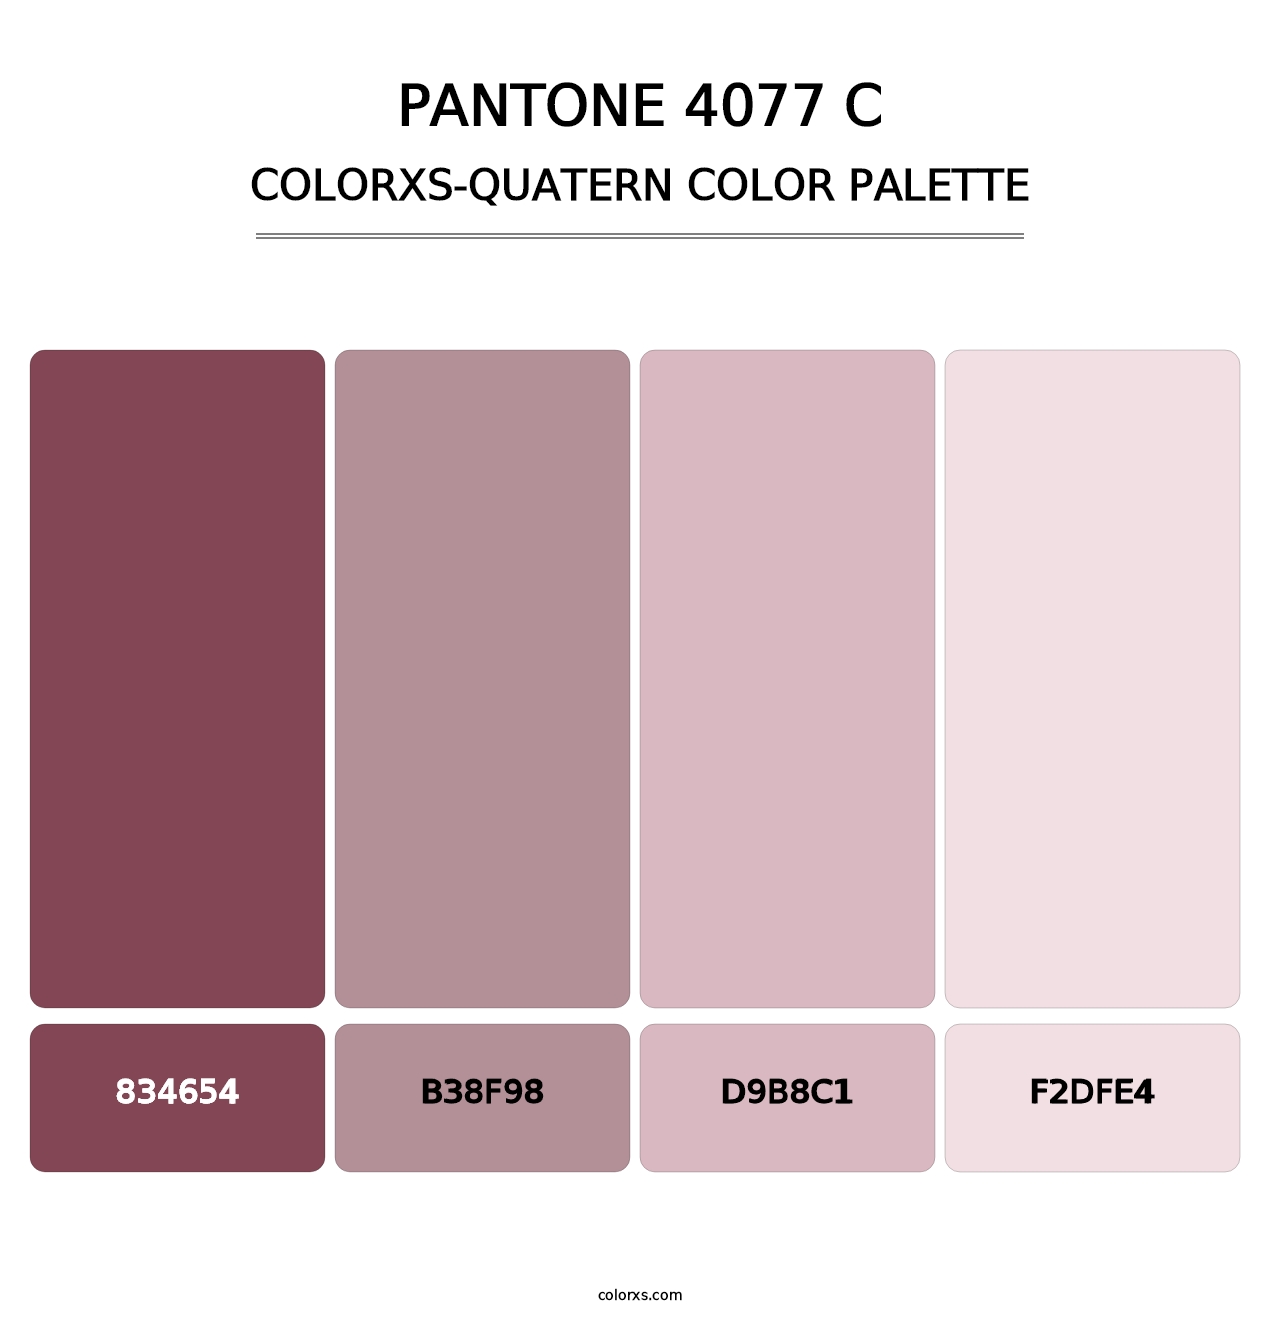 PANTONE 4077 C - Colorxs Quatern Palette